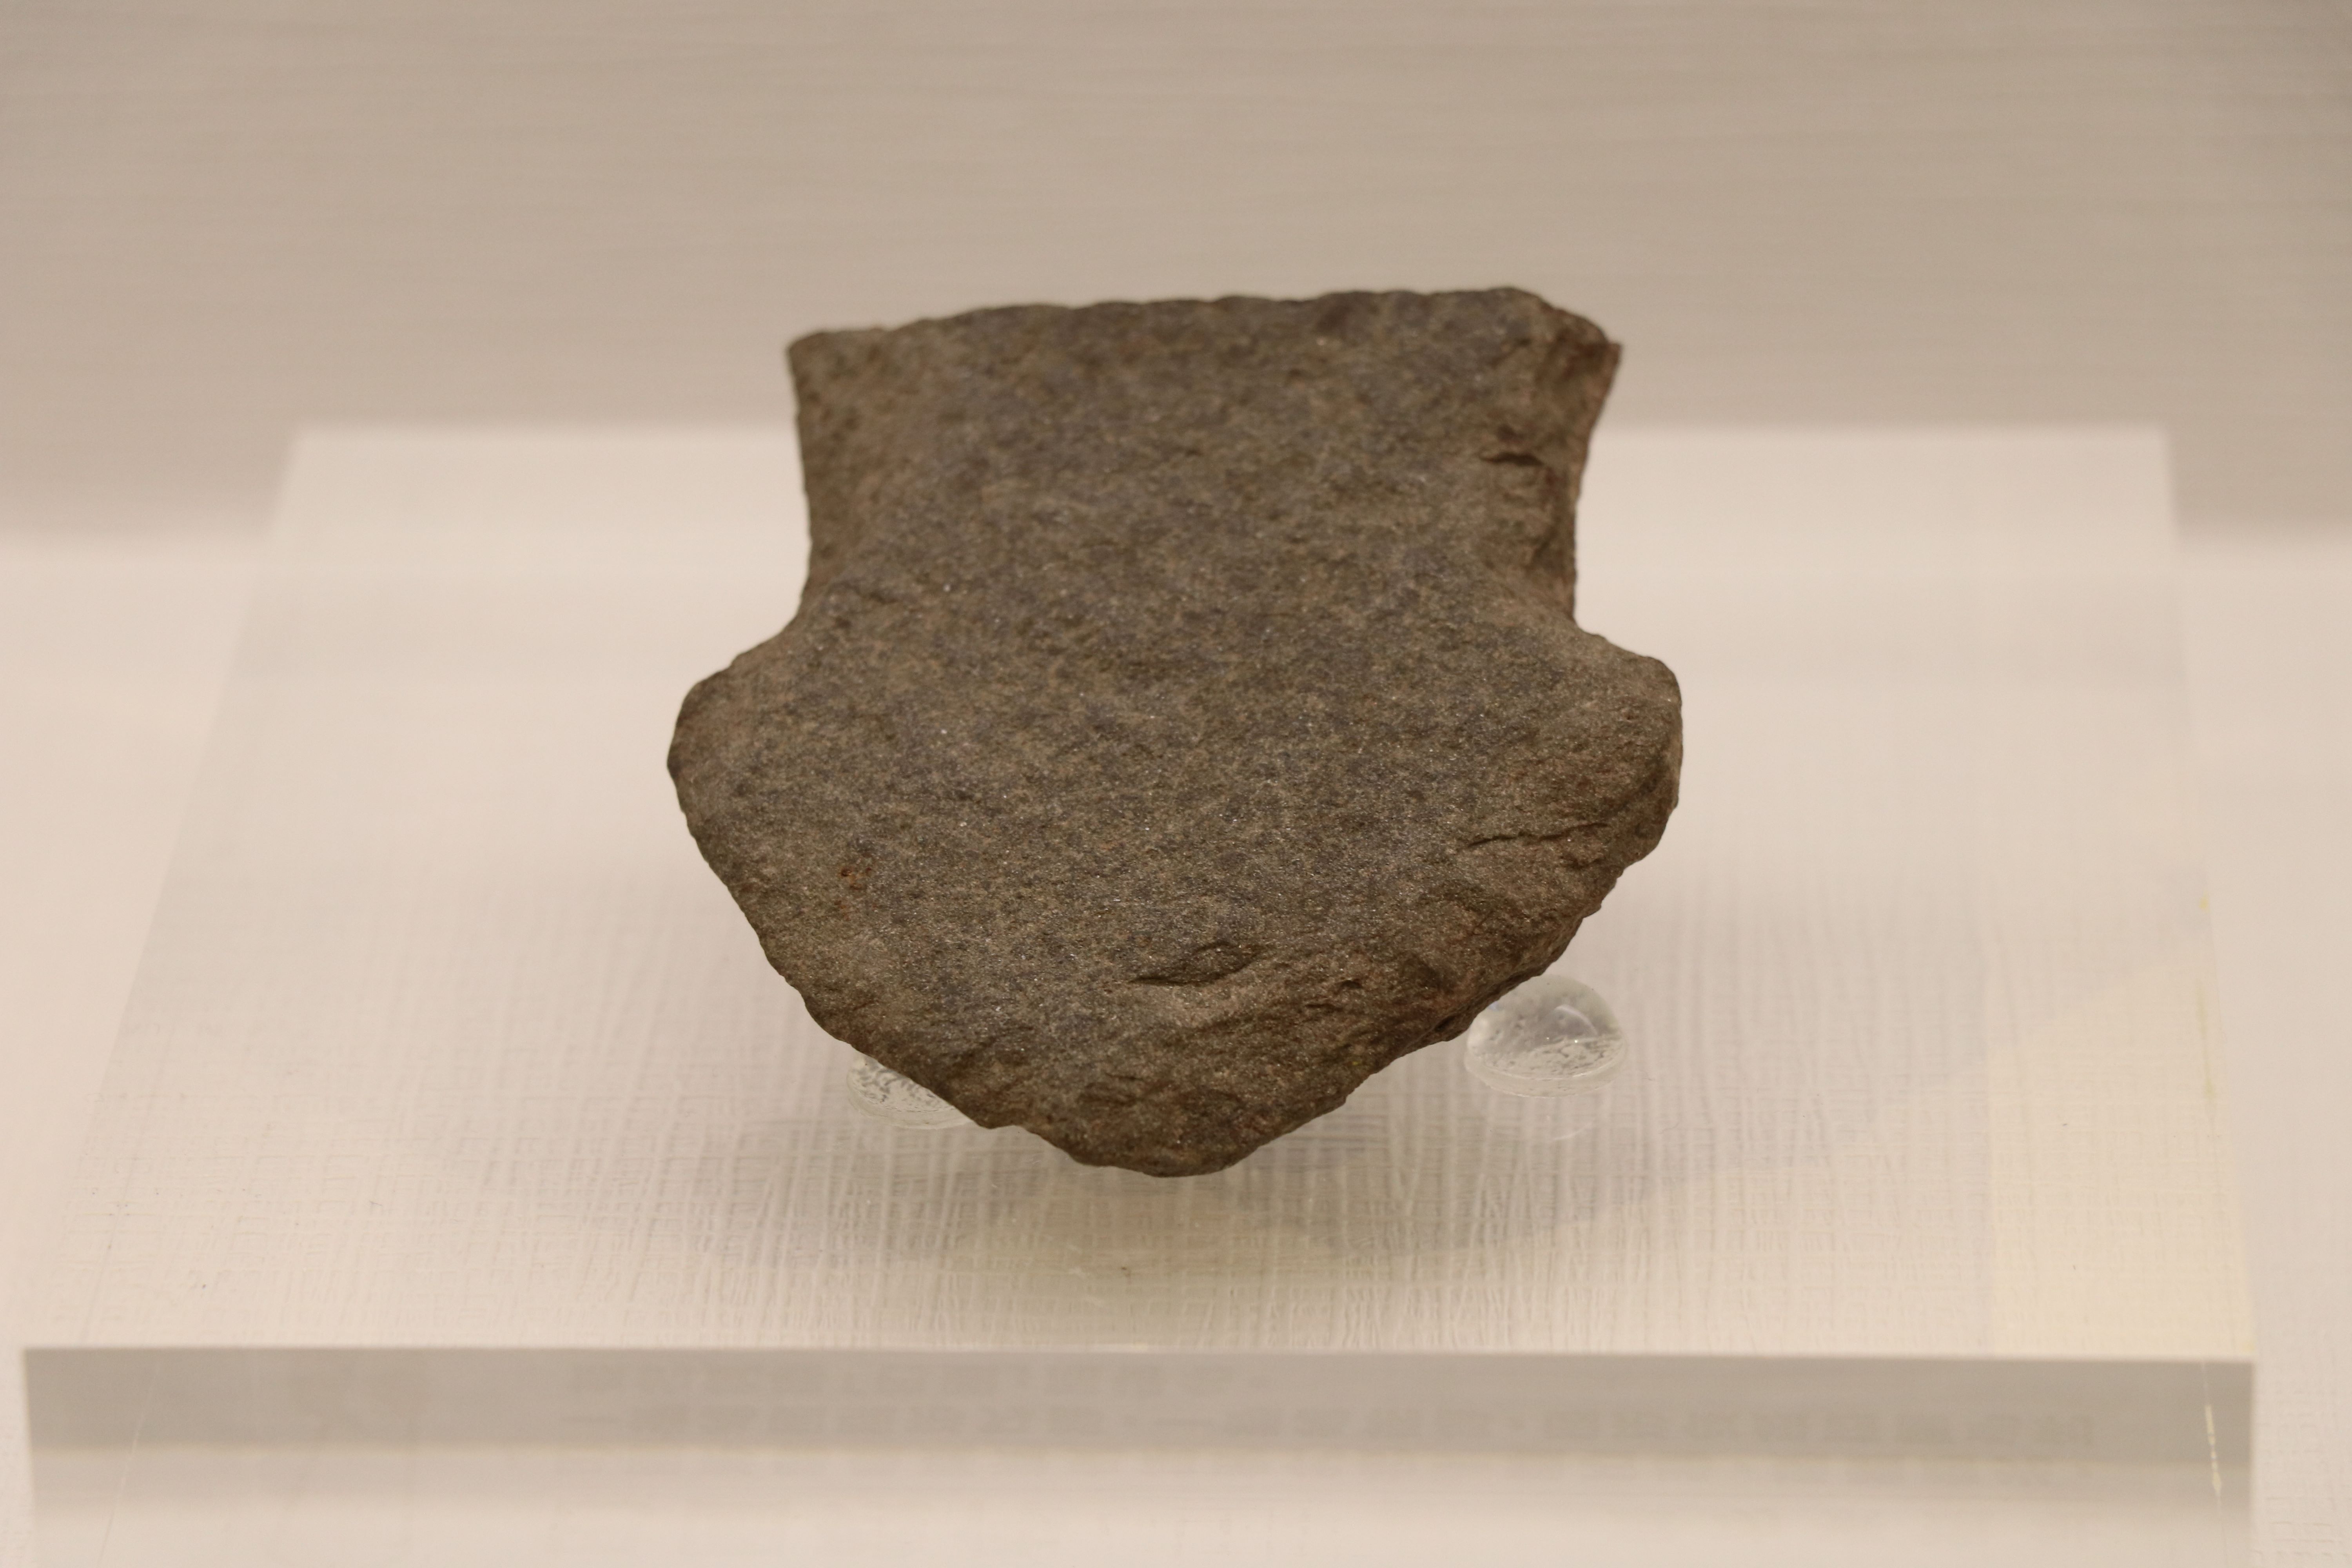 巴圖形石器在許多太平洋地區被視為重要的器物